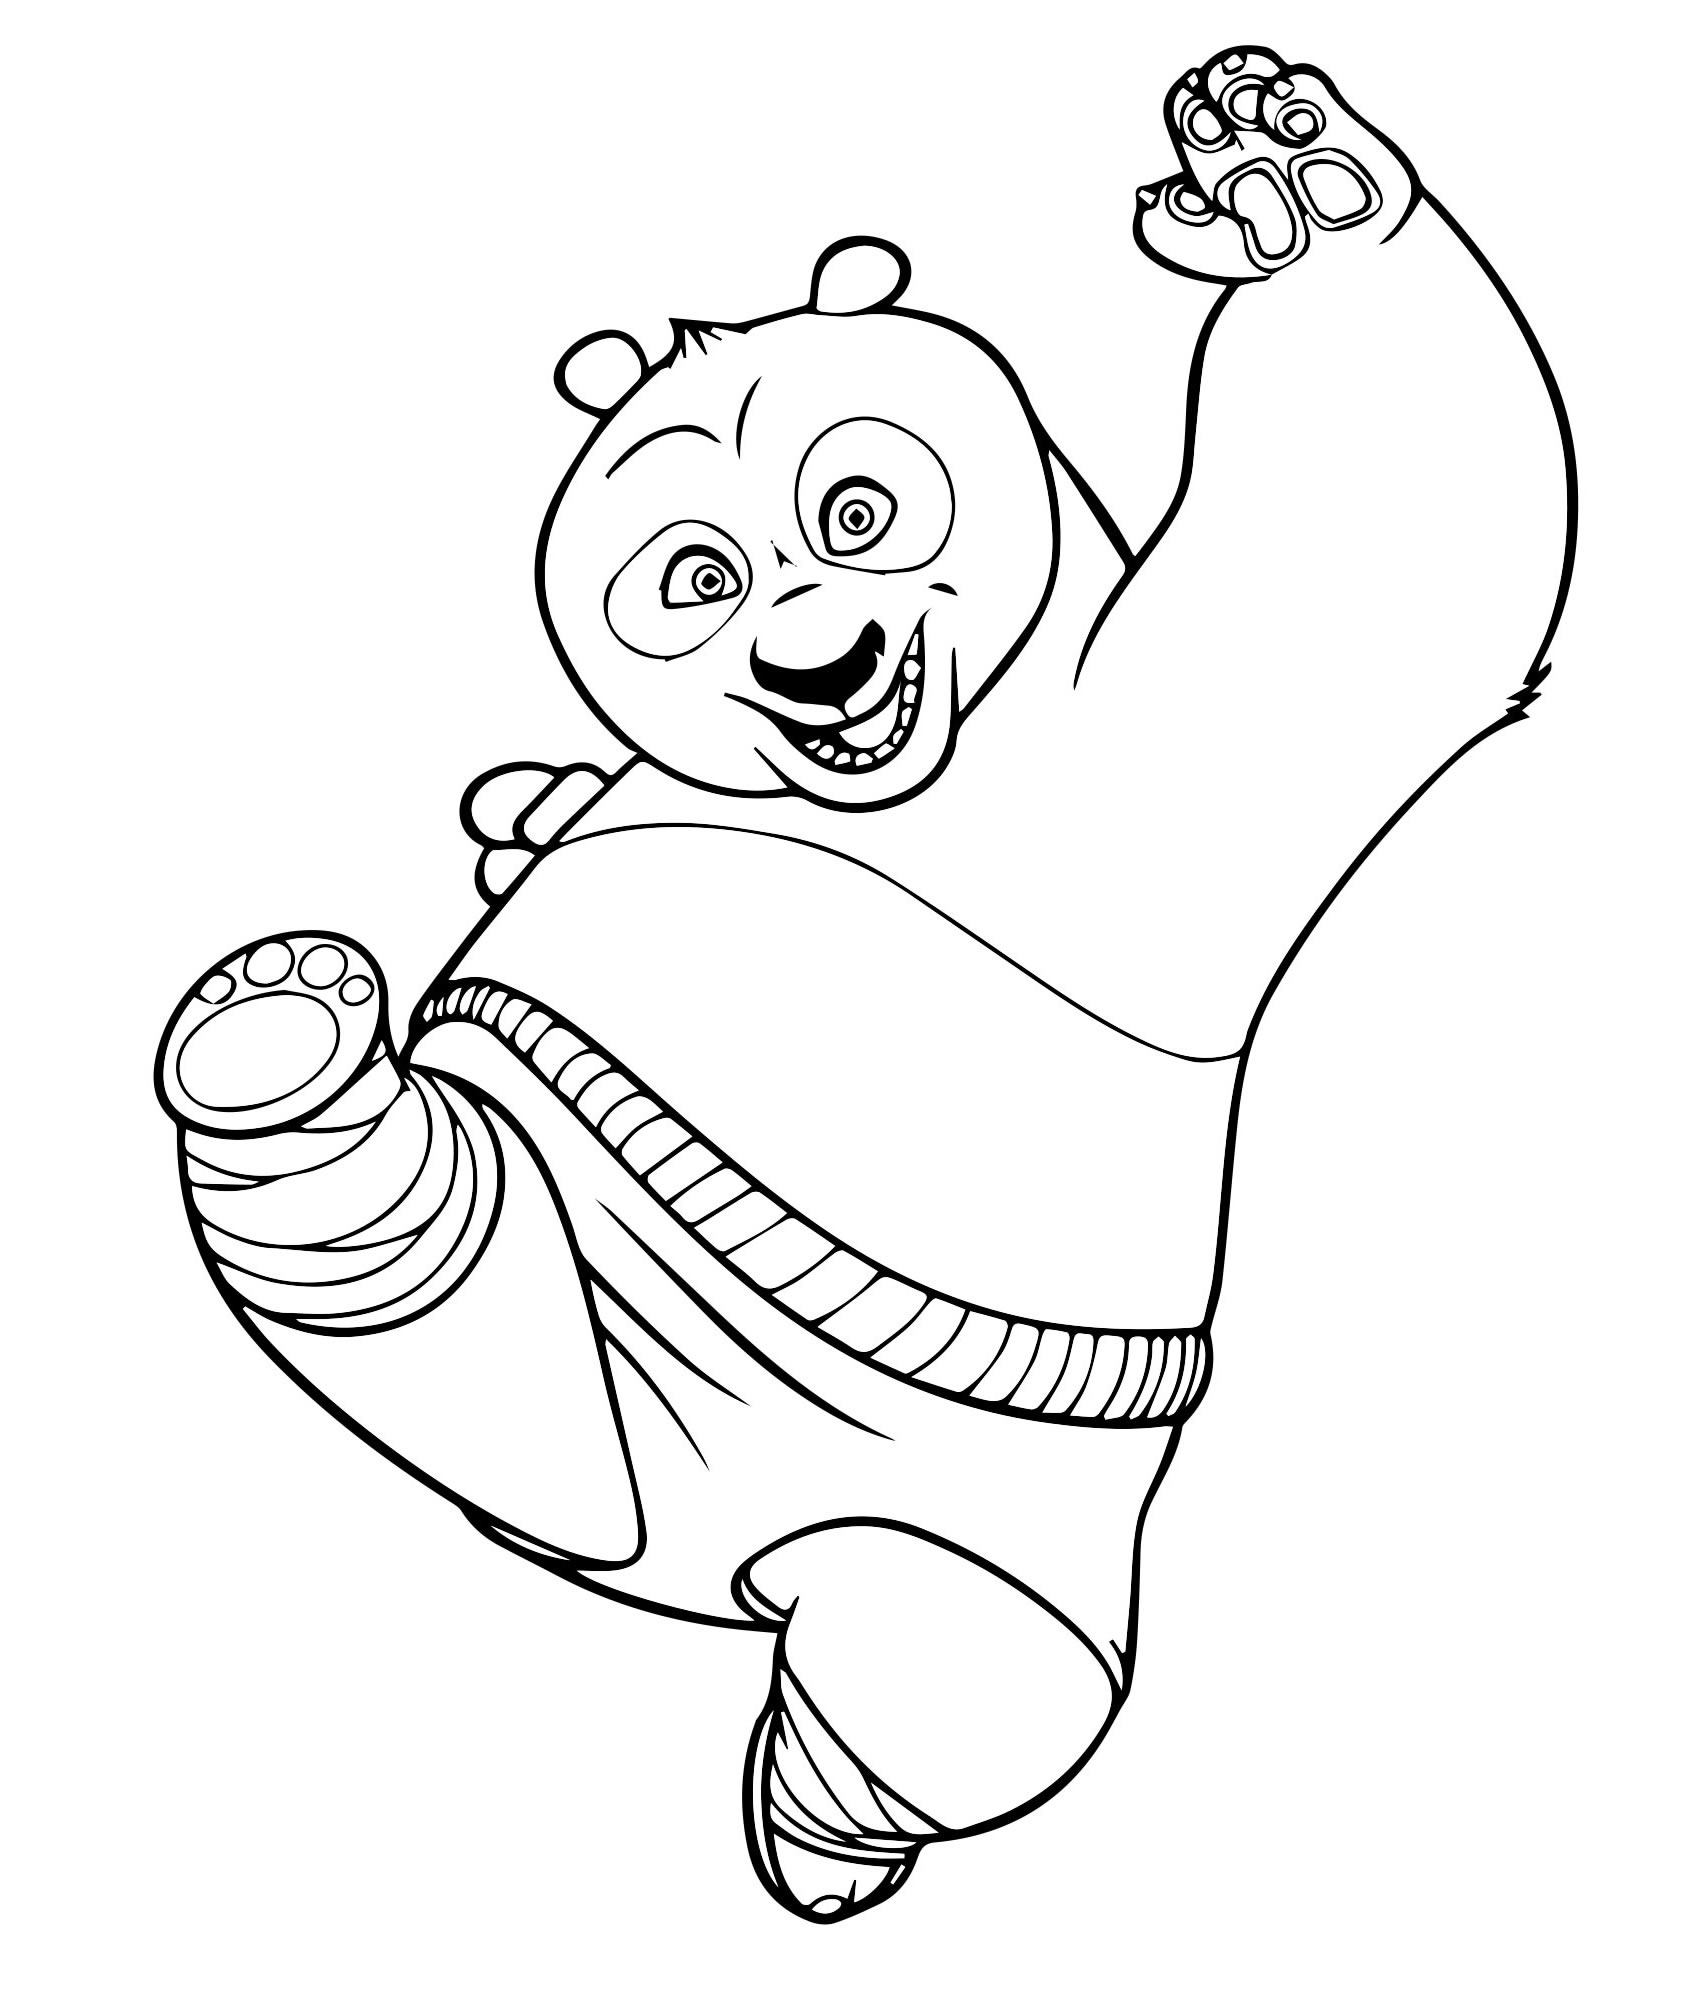 Мультик Кунг фу панда раскраска для детей